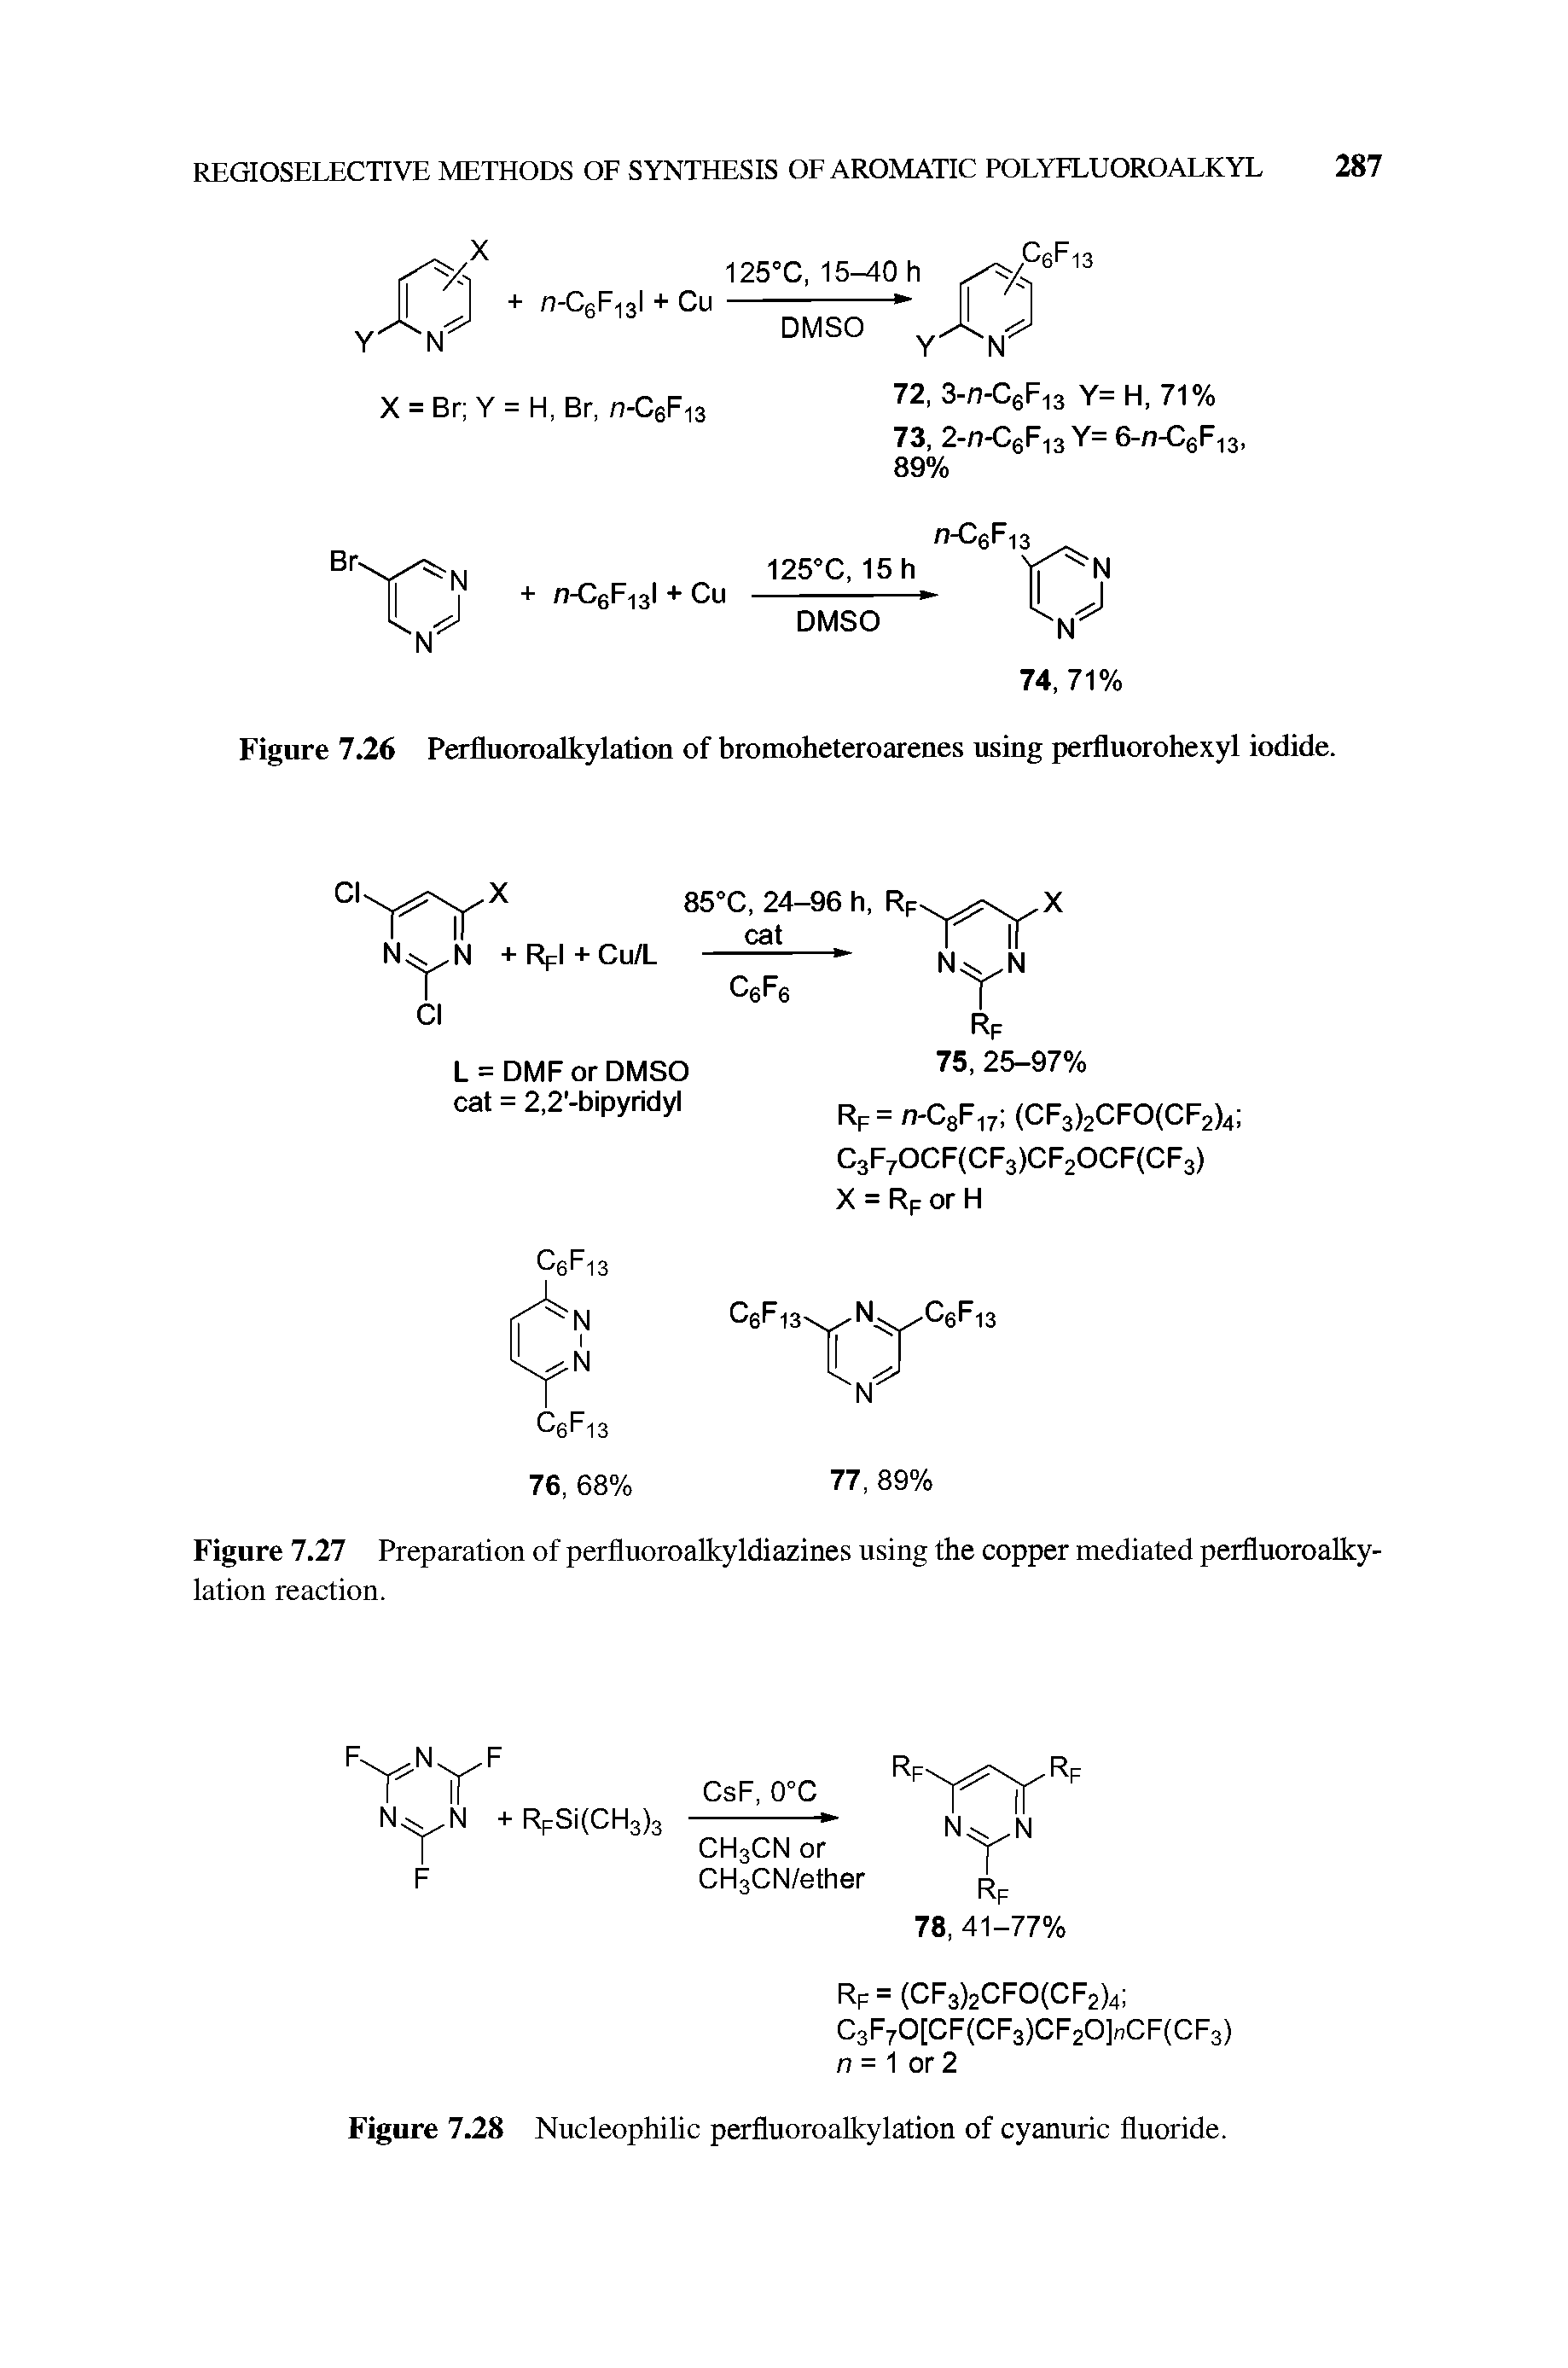 Figure 7.26 Perfluoroalkylation of bromoheteroarenes using perfluorohexyl iodide.